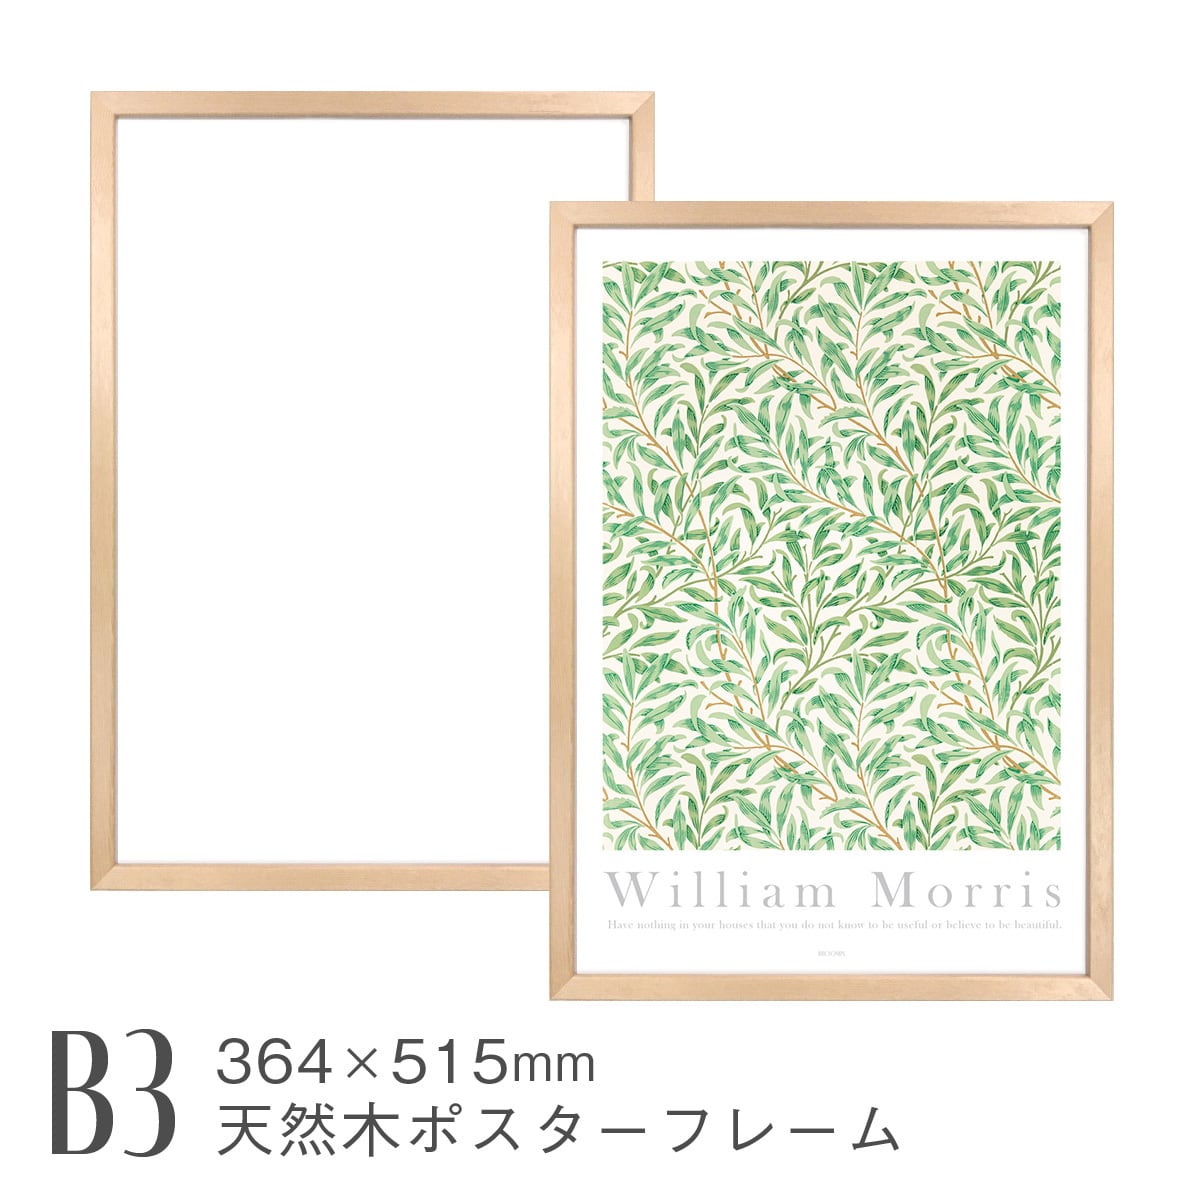 天然木ポスターフレーム [B3] 364×515mm 日本製 木製 ナチュラル 額縁 ポスターパネル